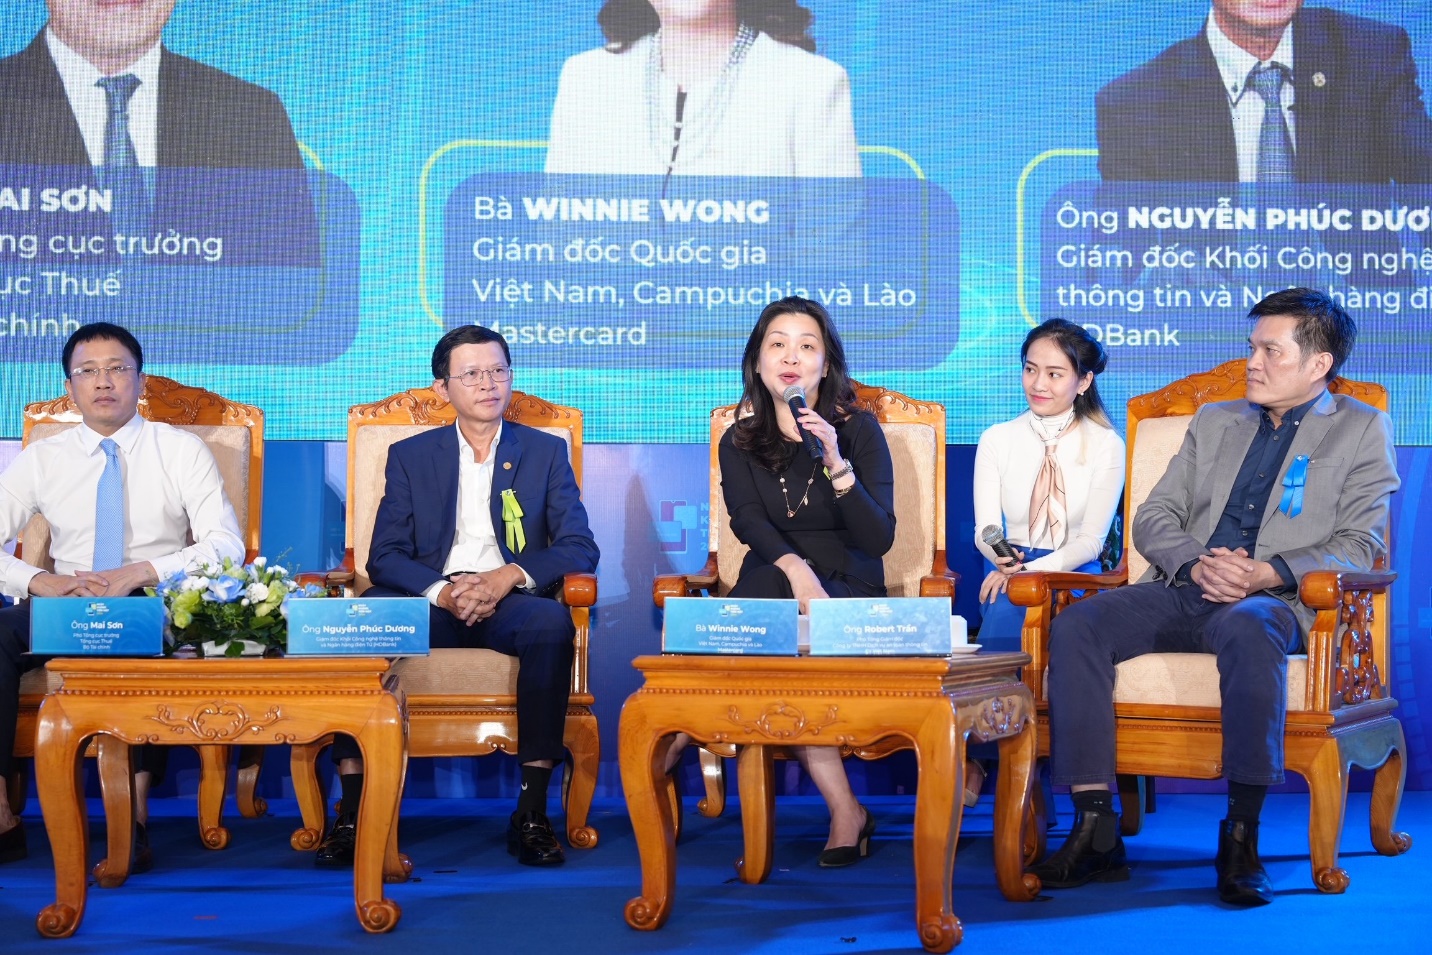 Bà Winnie Wong - Giám đốc Quốc gia của Mastercard tại Việt Nam, Campuchia và Lào chia sẻ tại Hội thảo.